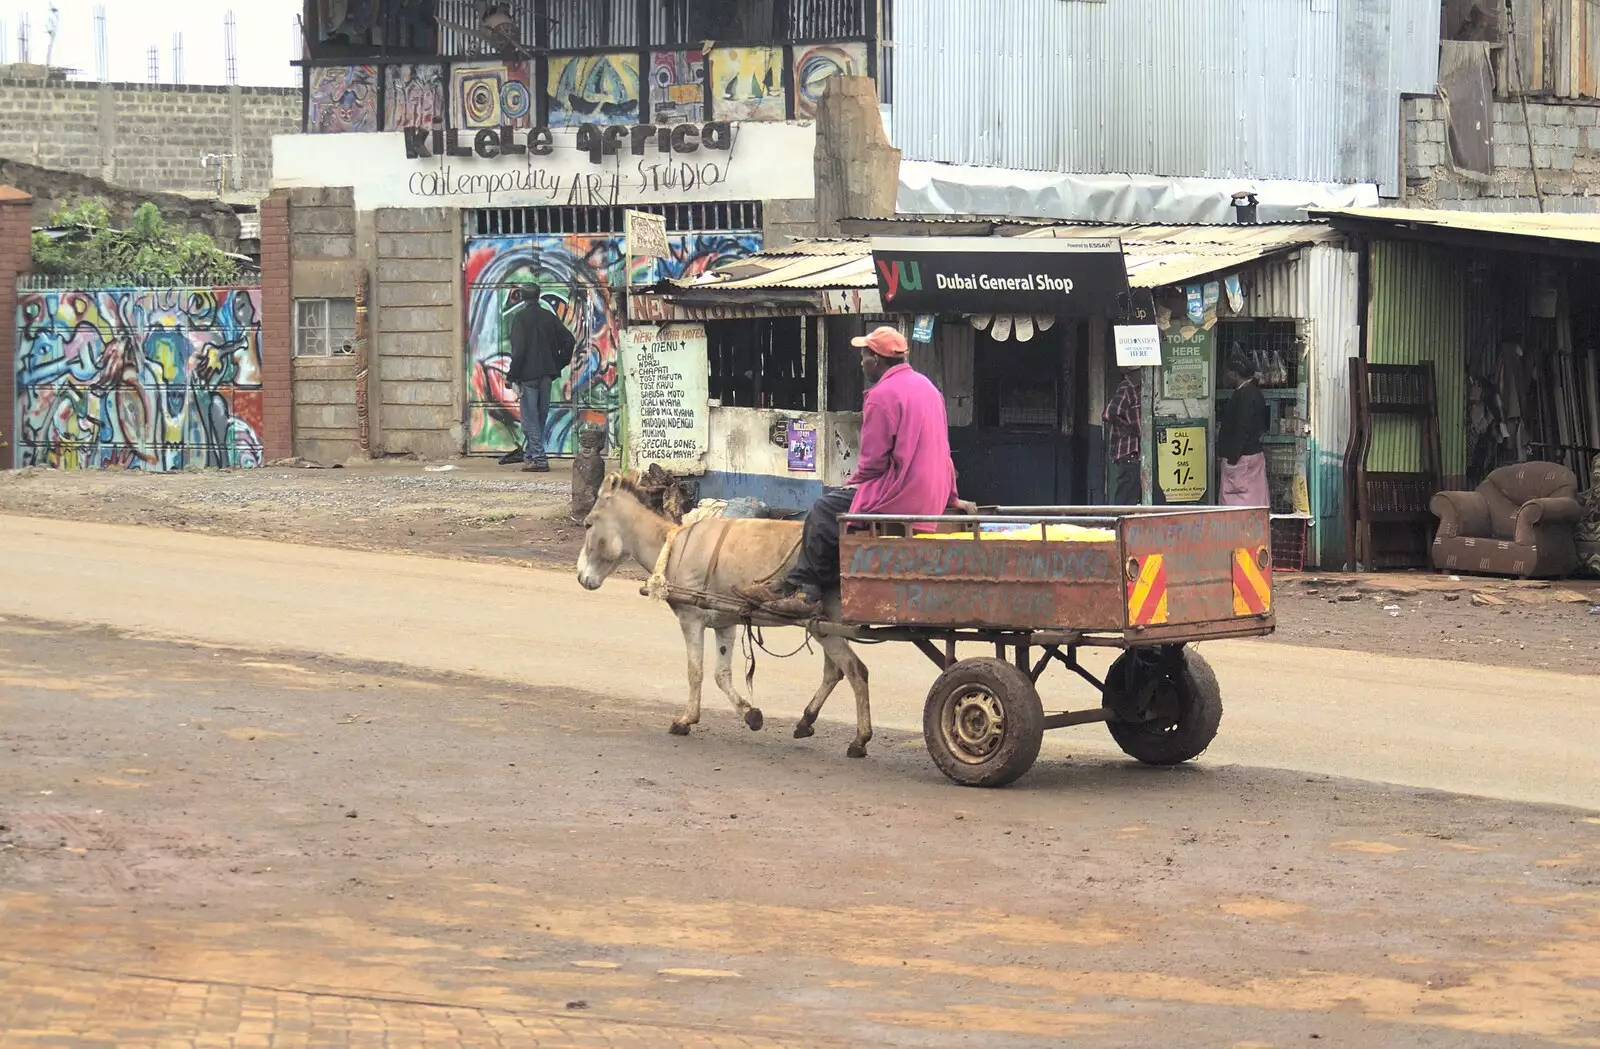 A donkey and cart on Limuru Road, from Nairobi and the Road to Maasai Mara, Kenya, Africa - 1st November 2010